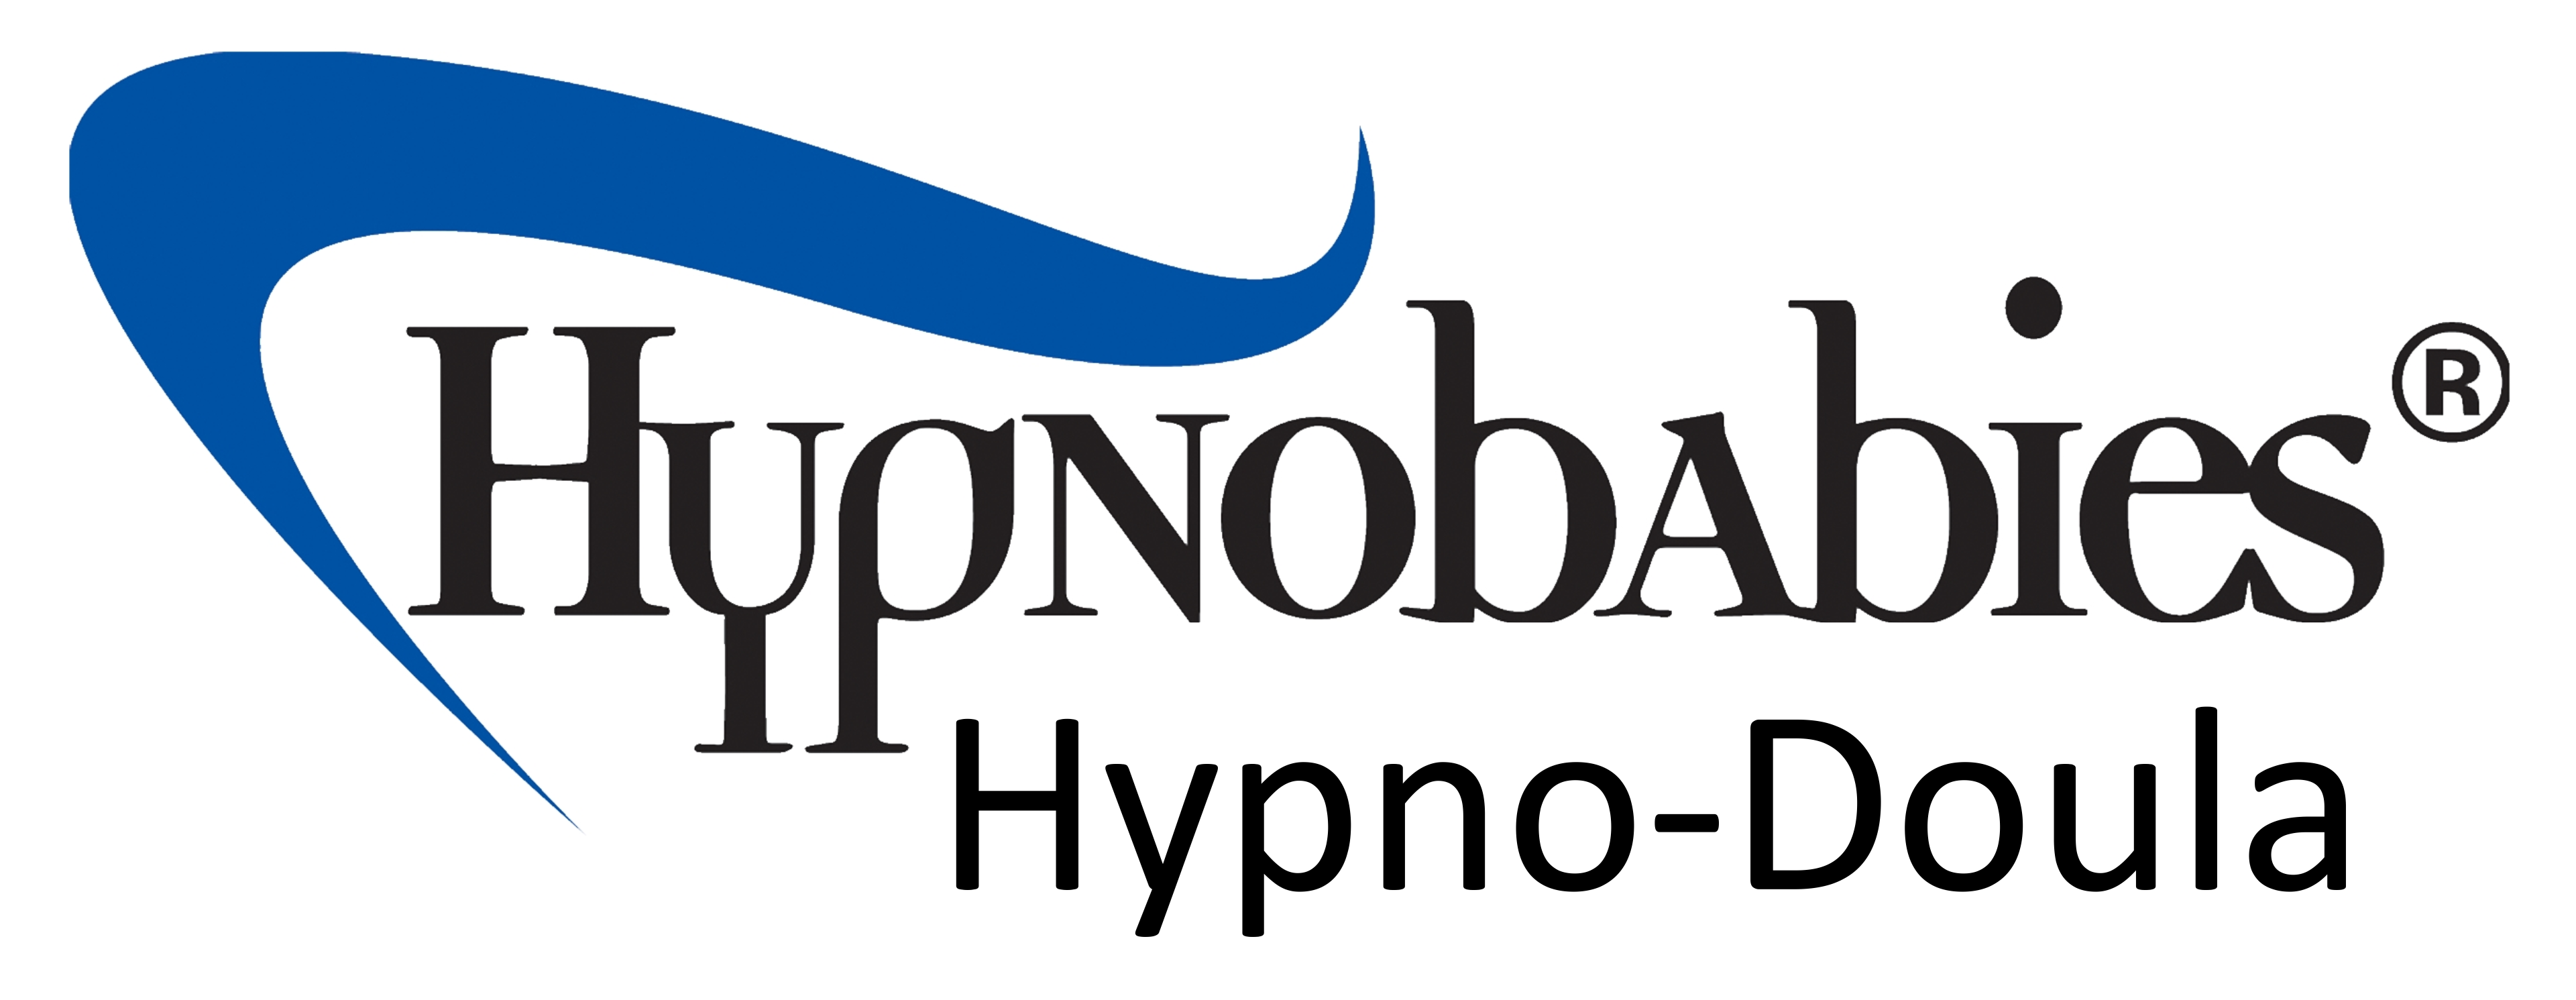 Hypnobabies Certified Hypno-Doula